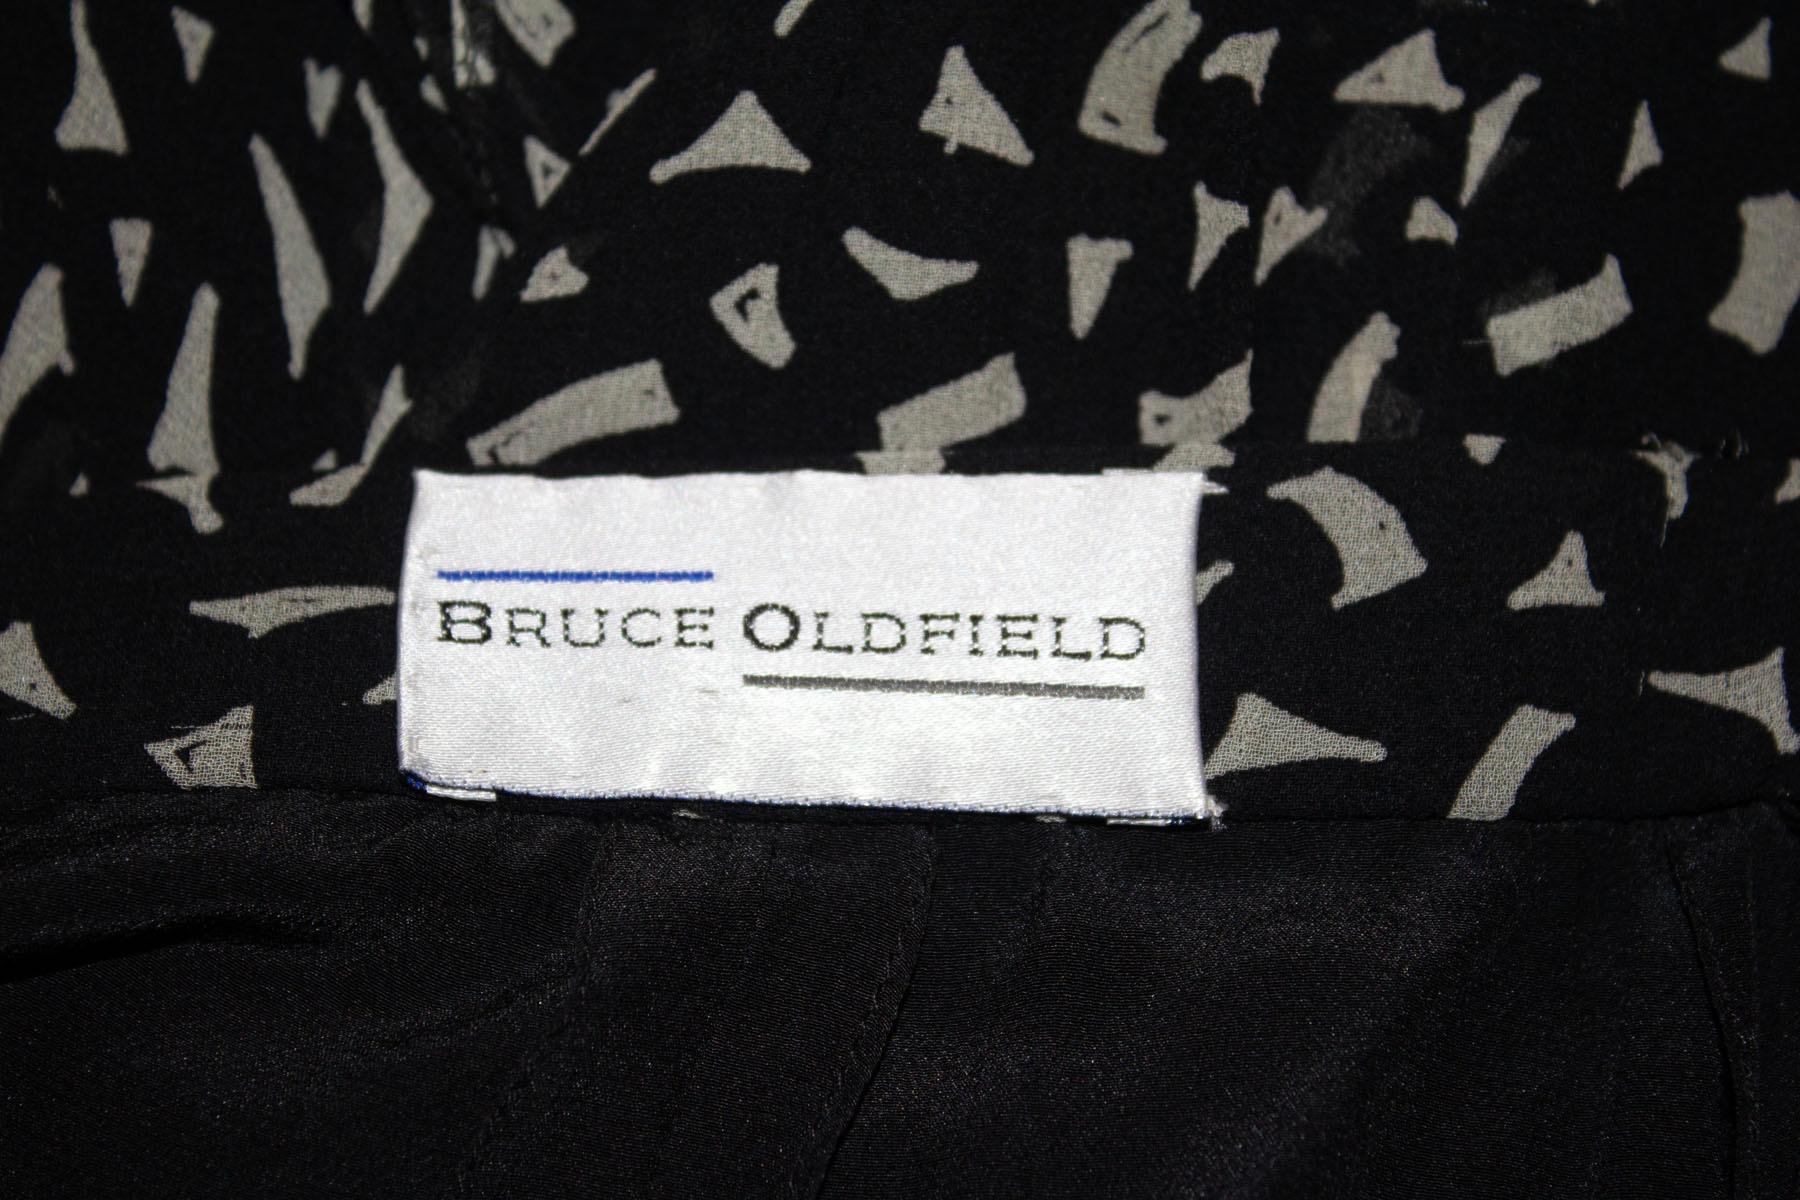 Une magnifique jupe en soie vintage de Bruce Oldfield.
La jupe présente un imprimé abstrait noir et blanc, une belle coupe et un volant au dos. Il est entièrement doublé et doté d'une fermeture éclair centrale au dos.
Mesures : taille 27'', longueur